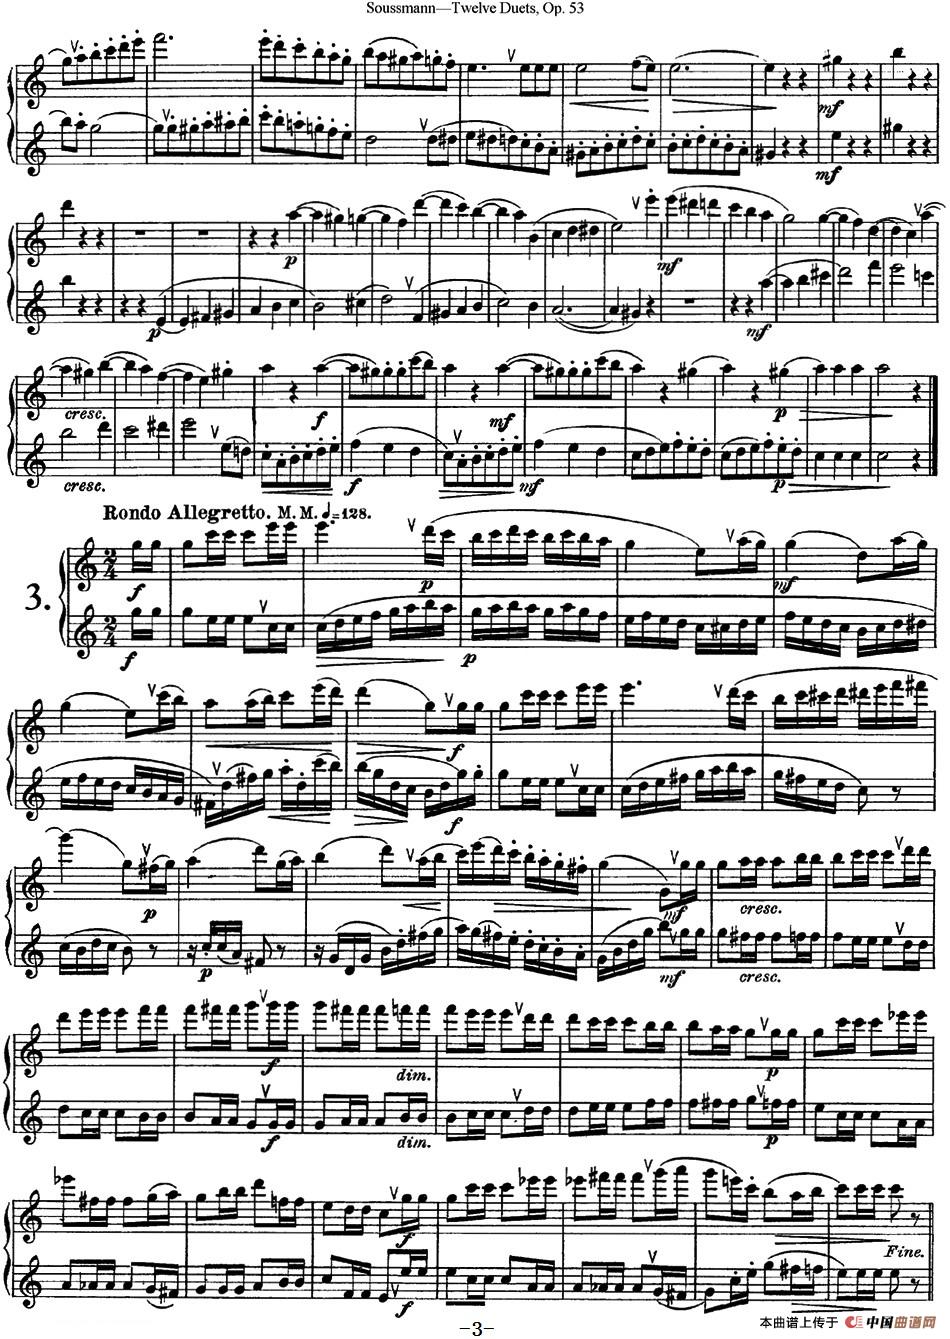 苏斯曼12首长笛重奏曲Op.53（NO.1-NO.4）